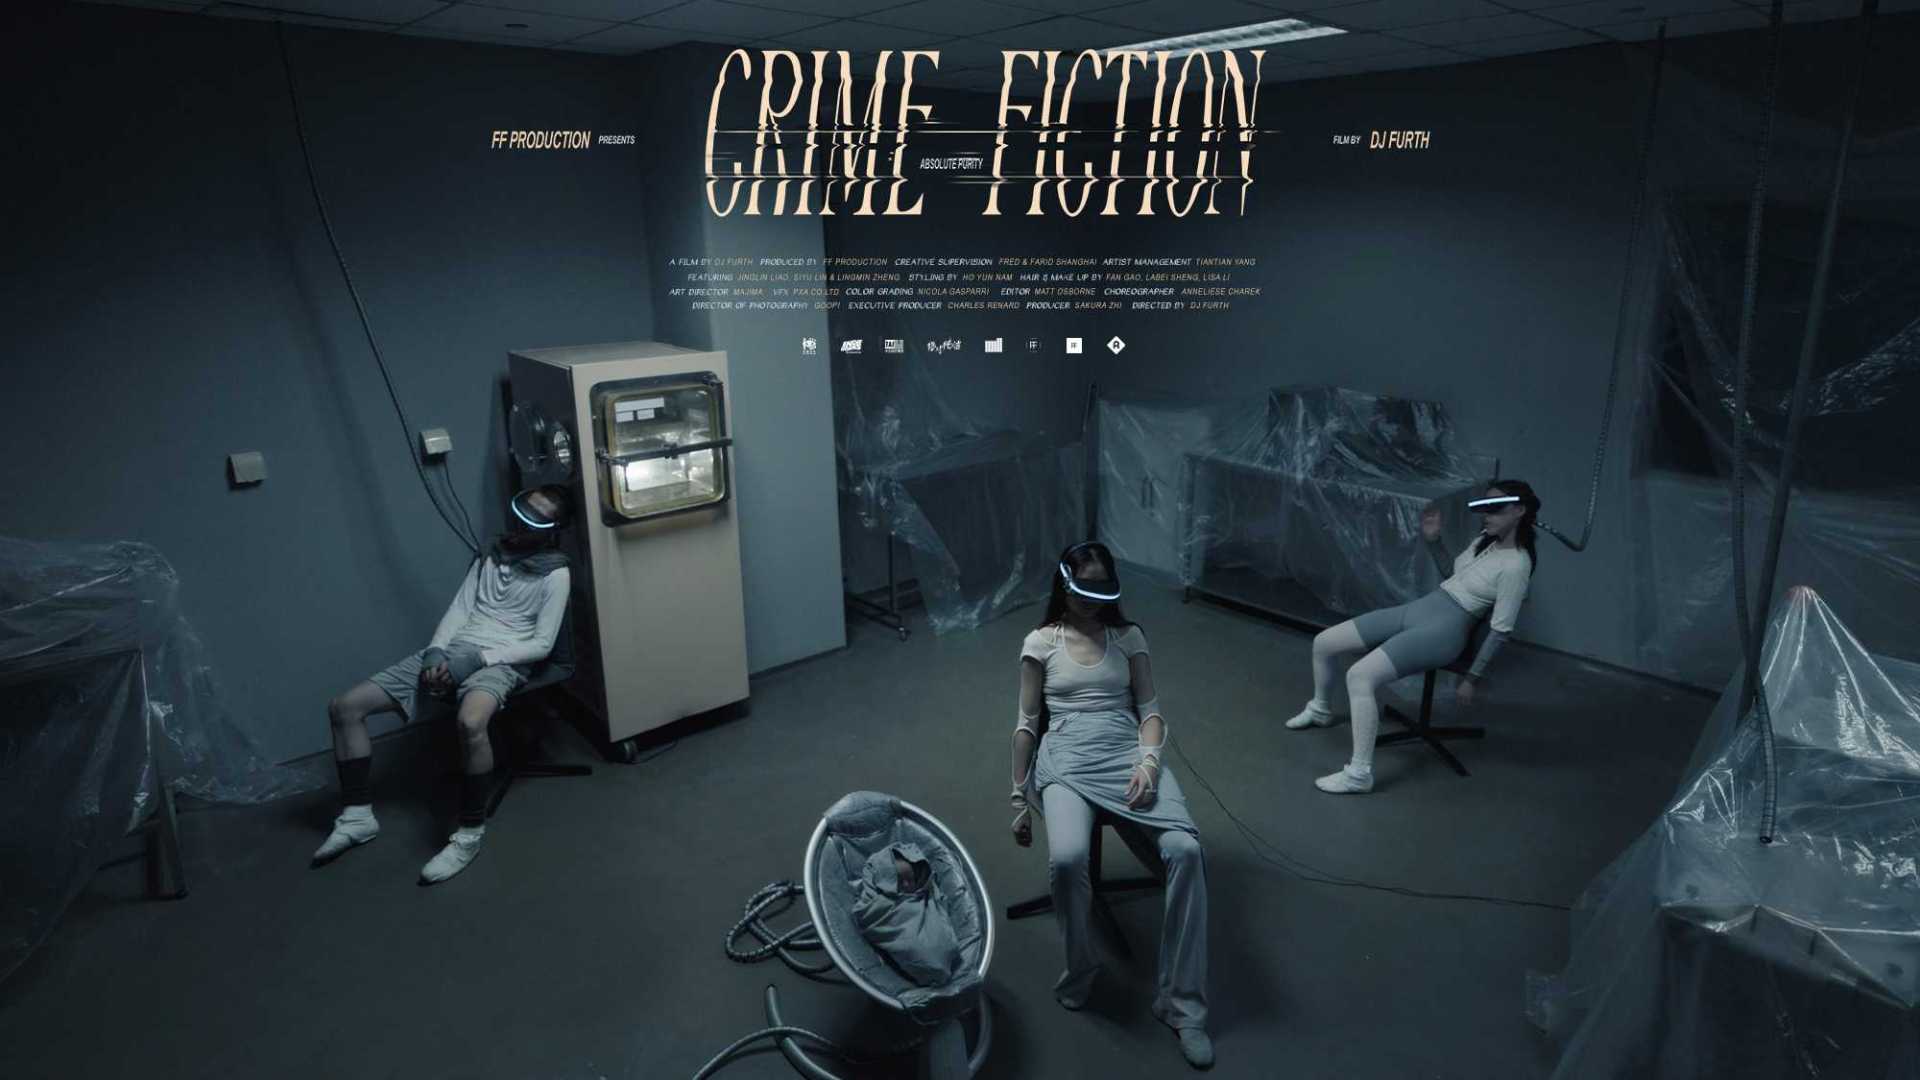 绝对纯洁 ABSOLUTE PURITY - 'CRIME FICTION'